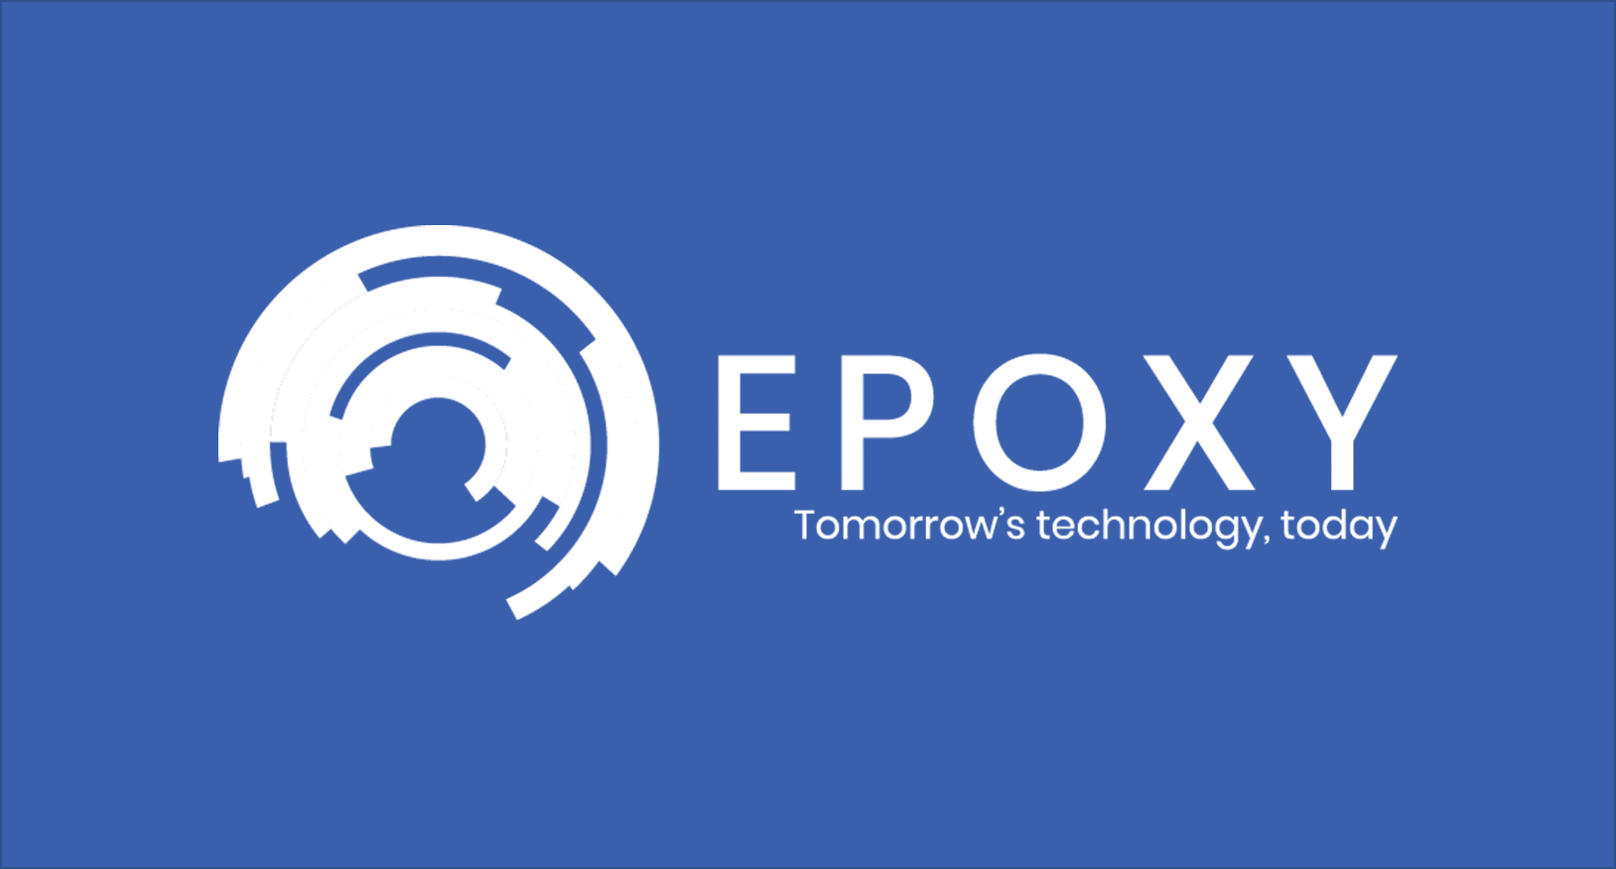 About Epoxy Europe